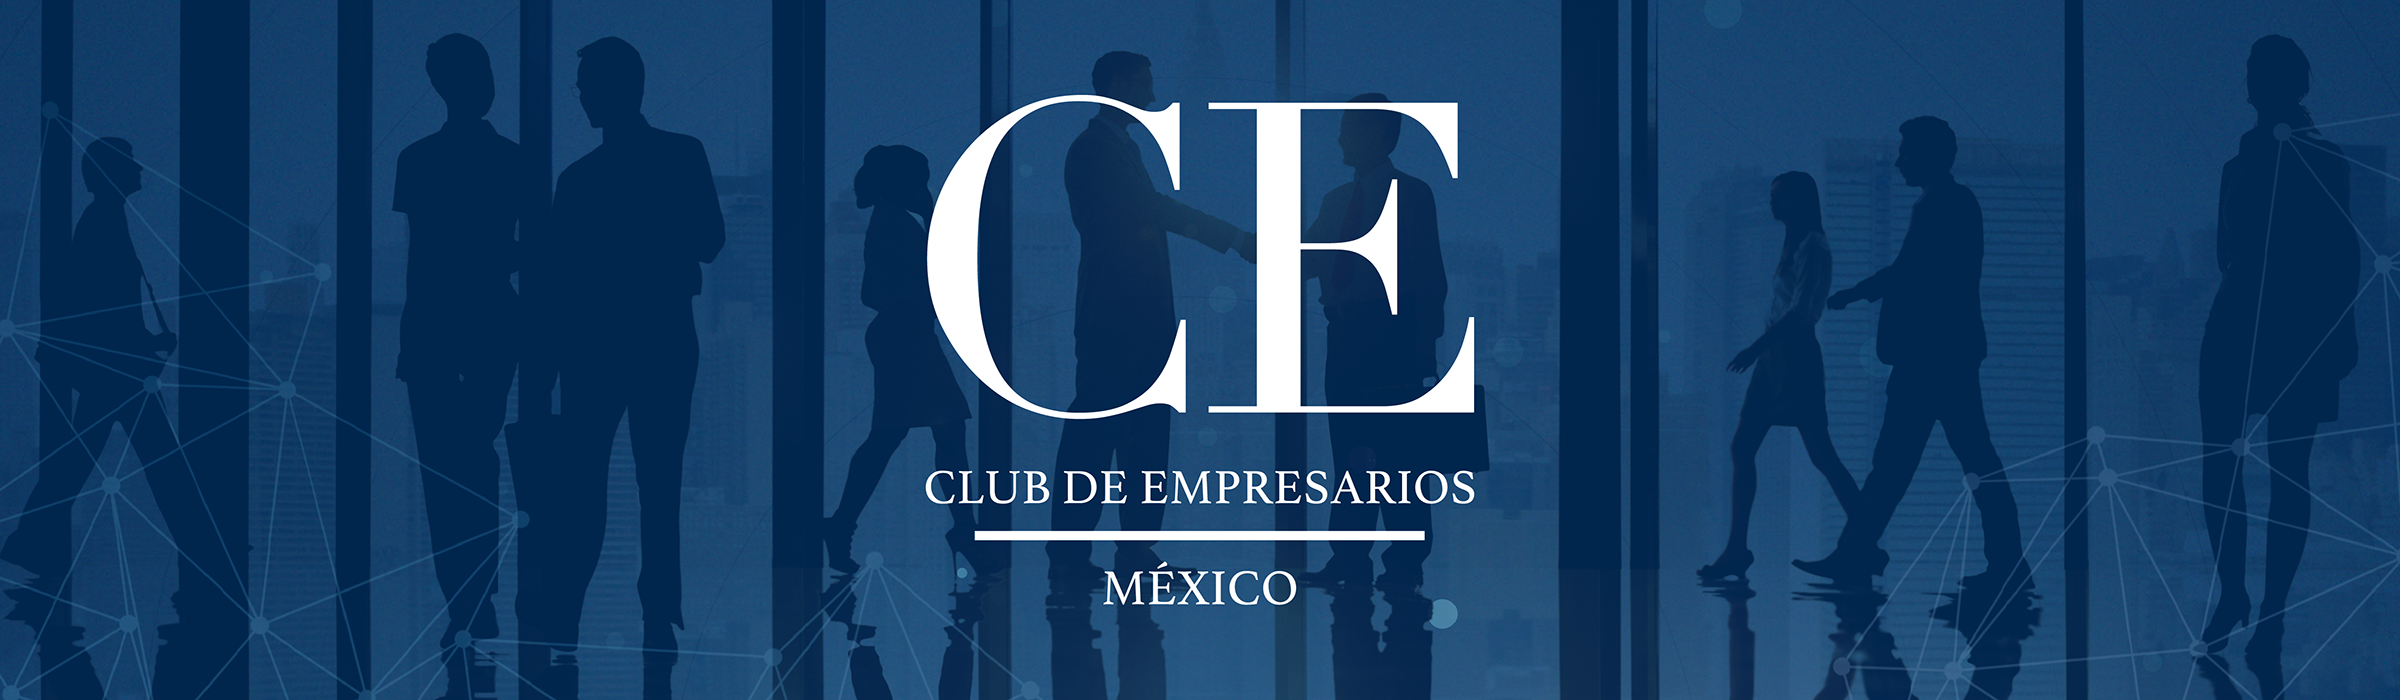 club-de-empresarios-mexico-banner-principal-2400X700